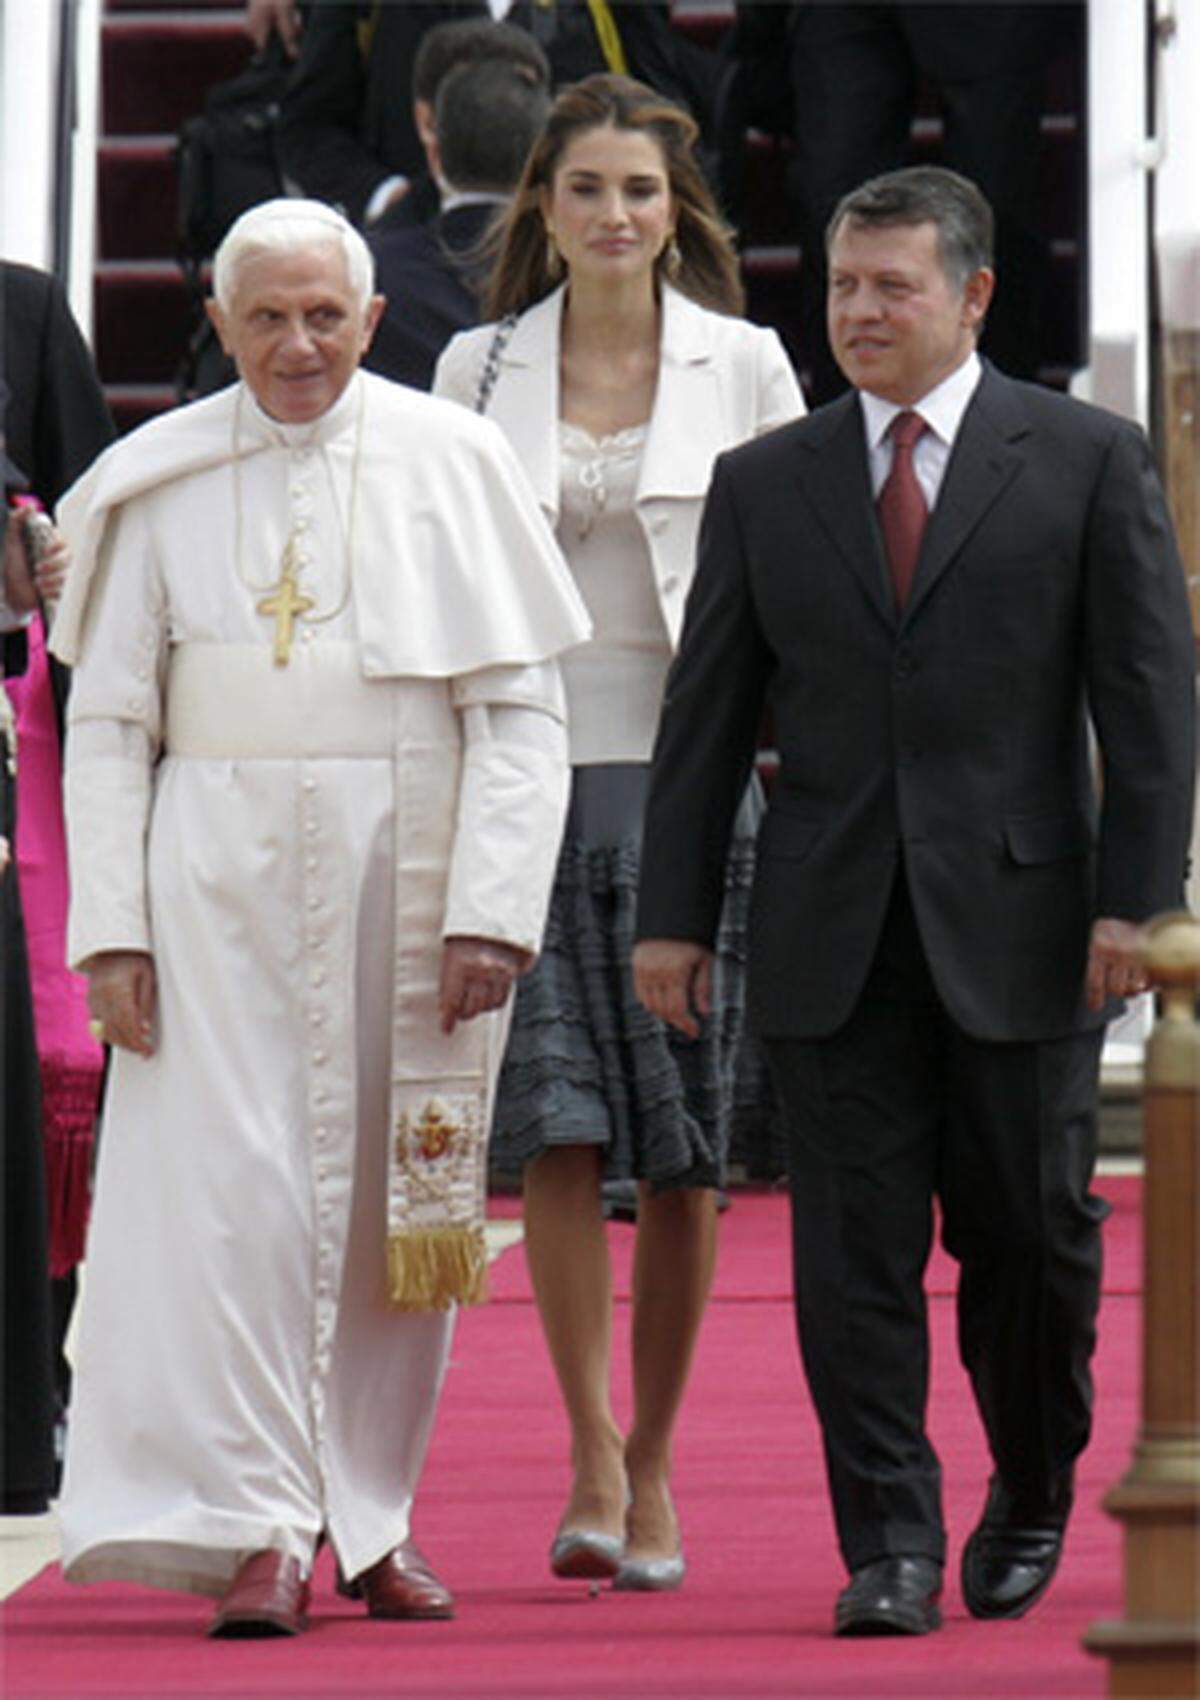 Der Papst ist bereits seit Freitag im Nahen Osten. Jordanien war die erste Station der päpstlichen Reise. Papst Benedikt besucht zum ersten Mal ein arabisches Land. Papst Benedikt XVI., König Abdullah II. von Jordanien und Königin Rania bei der Ankunft des Papstes in Amman am Samstag.